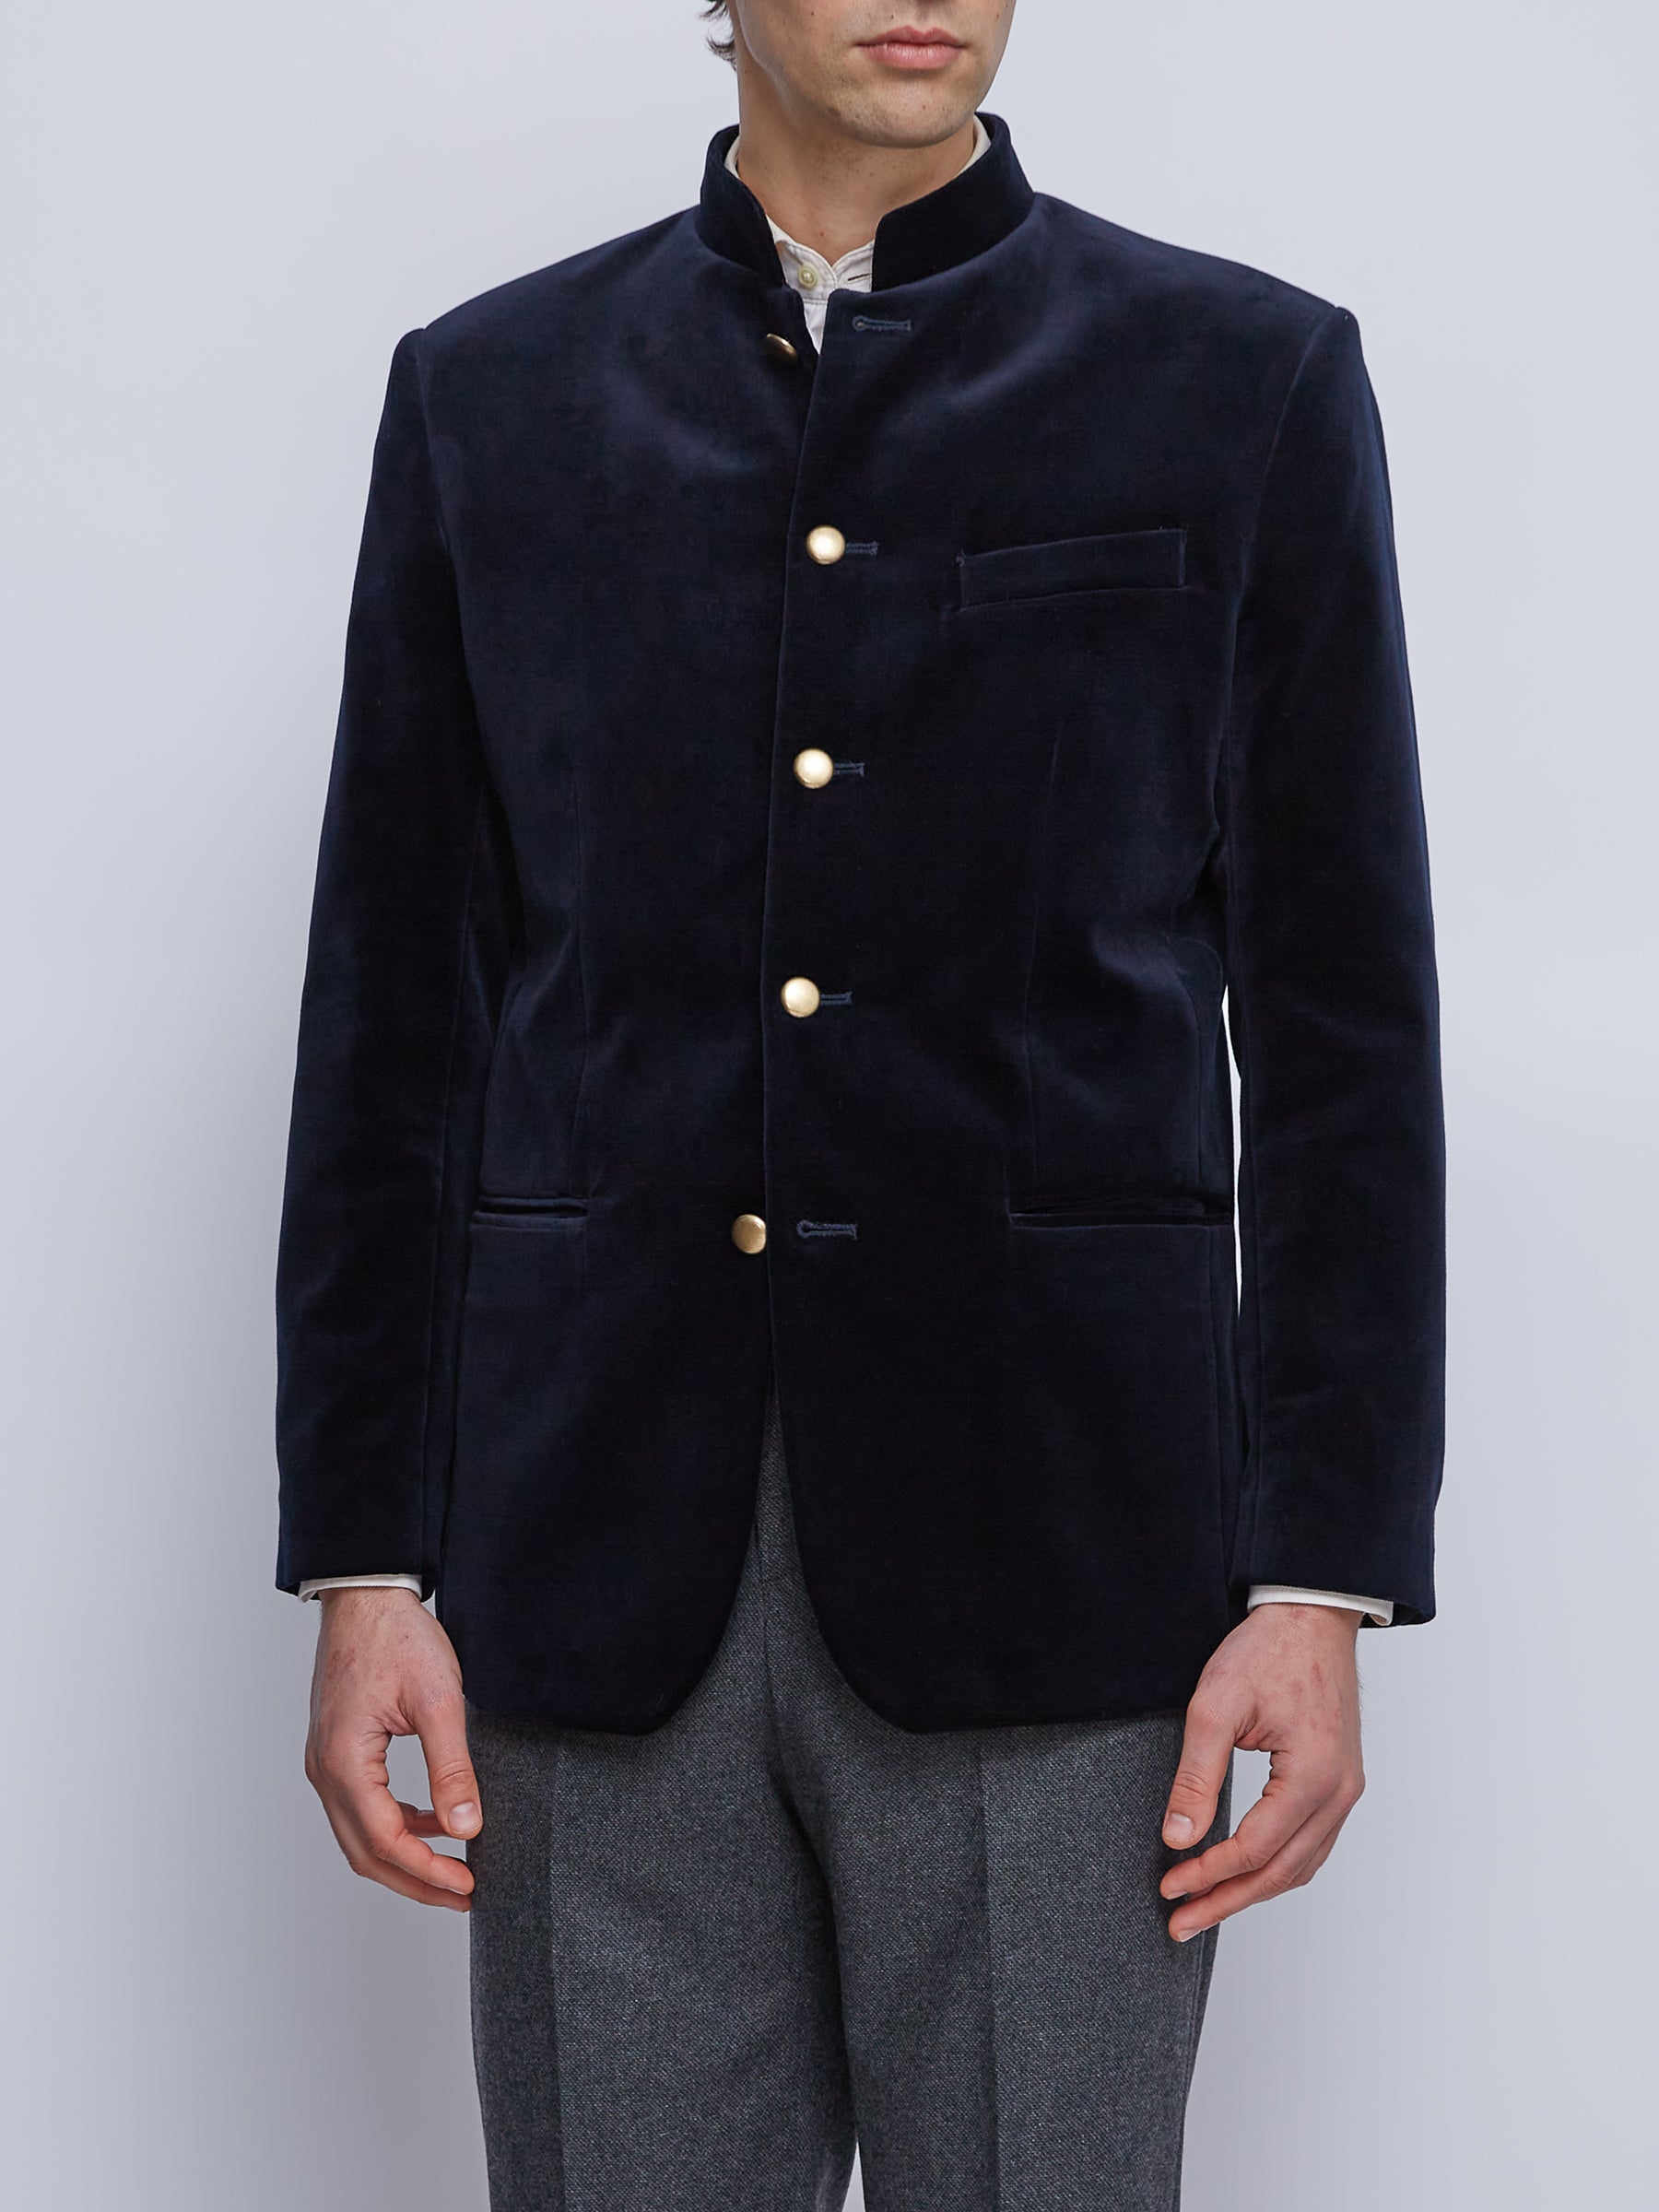 Men's Velvet Jackets, Velvet Blazers - Menswear – Favourbrook